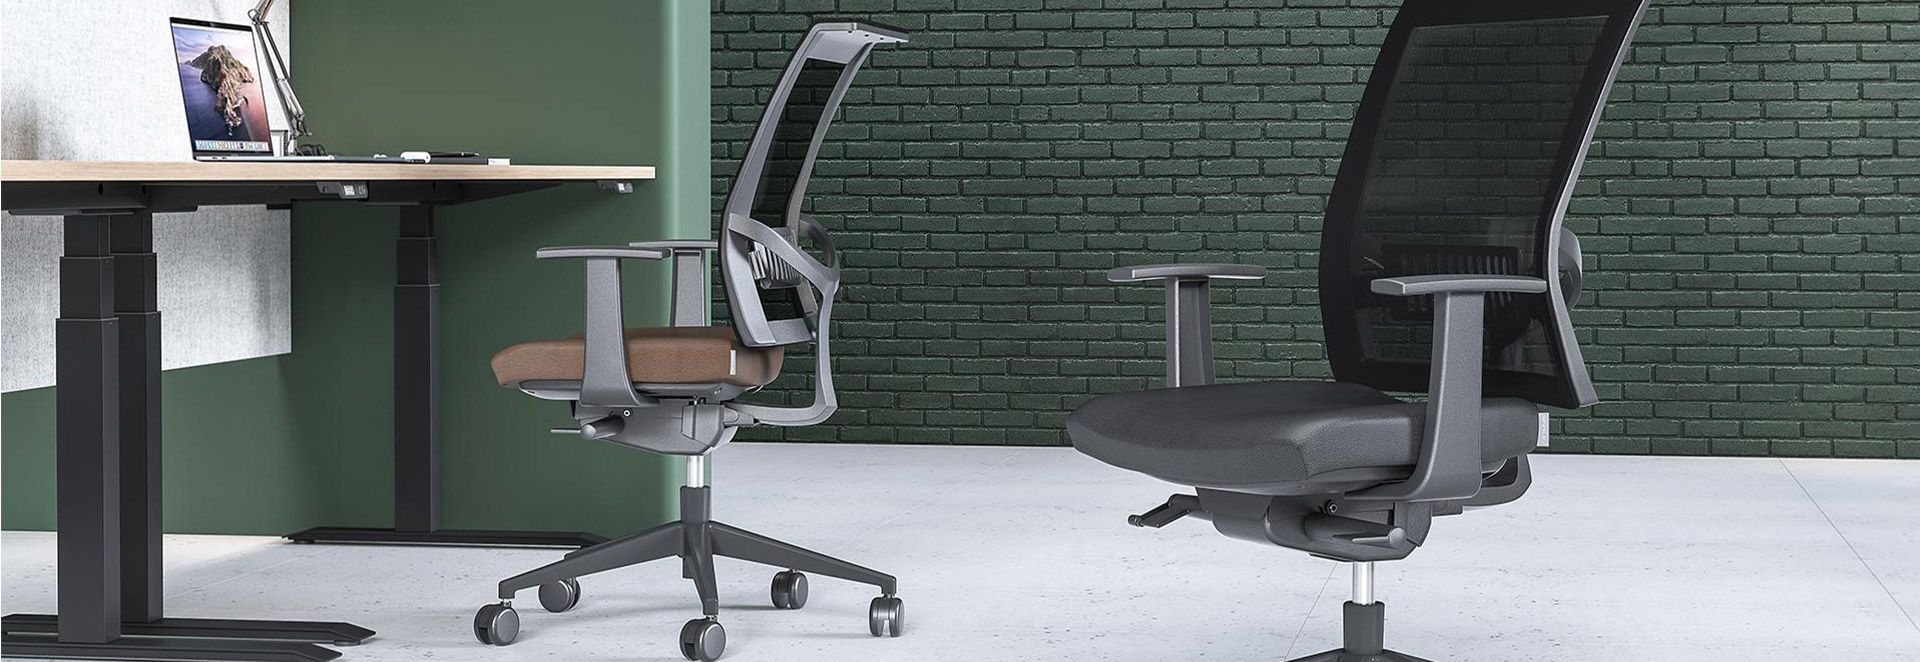 Zijn ergonomische bureaustoelen de investering waard?